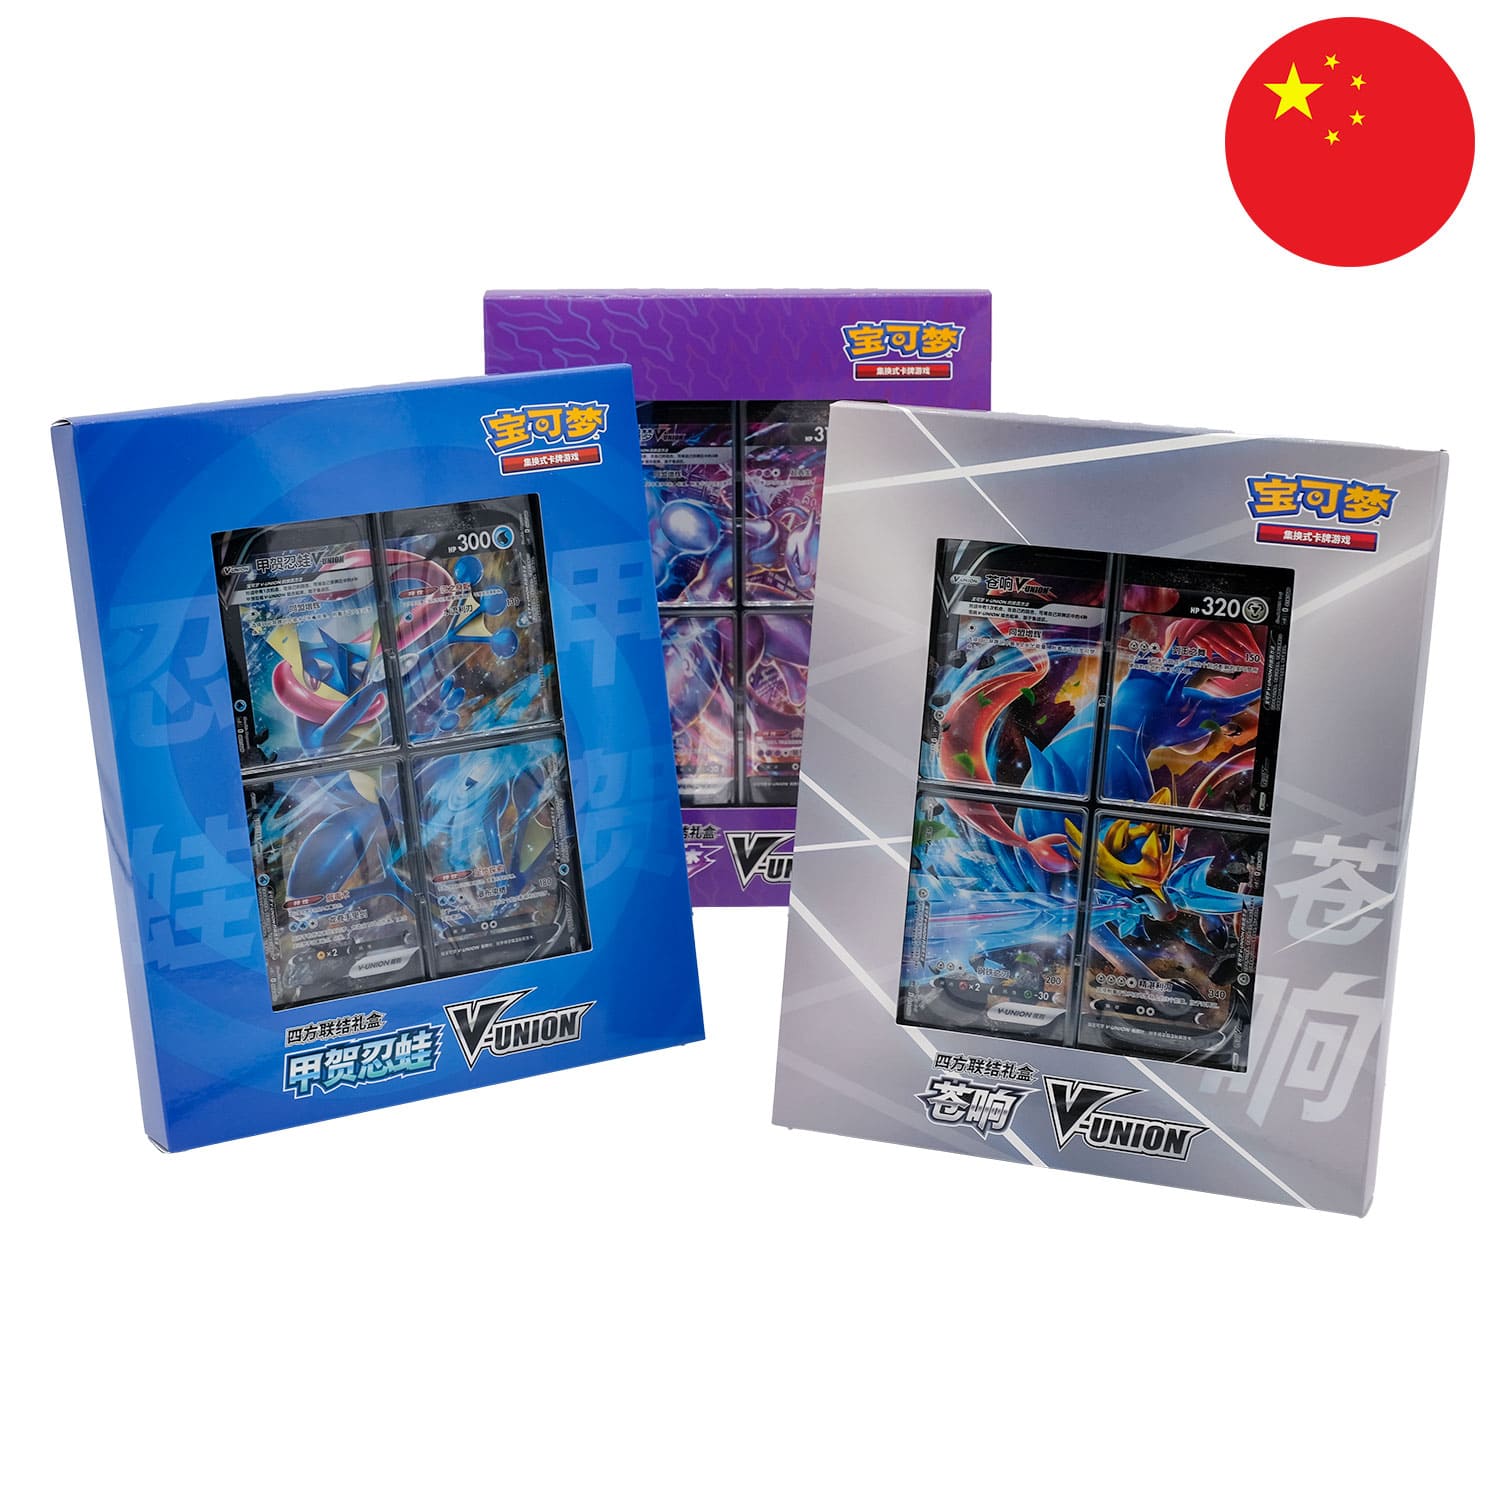 Die 3 V-Union Pokemon Boxen mit Binder Quajutsu, Mewtu & Zacian, frontal & nebeneinander, mit der Flagge Chinas in der Ecke.